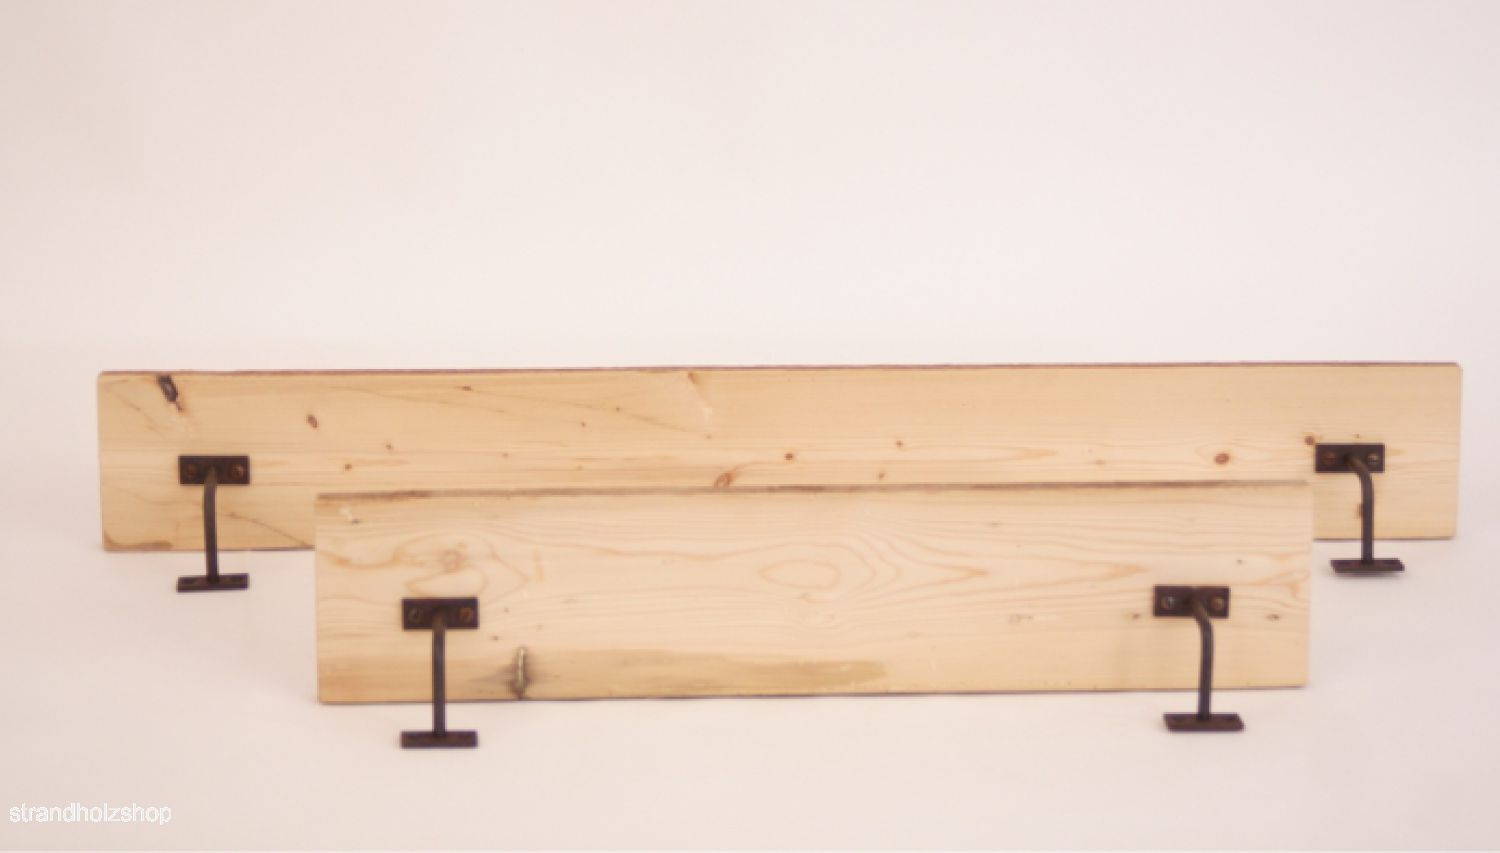 Eisenwinkel 8x8cm für Holz Regal